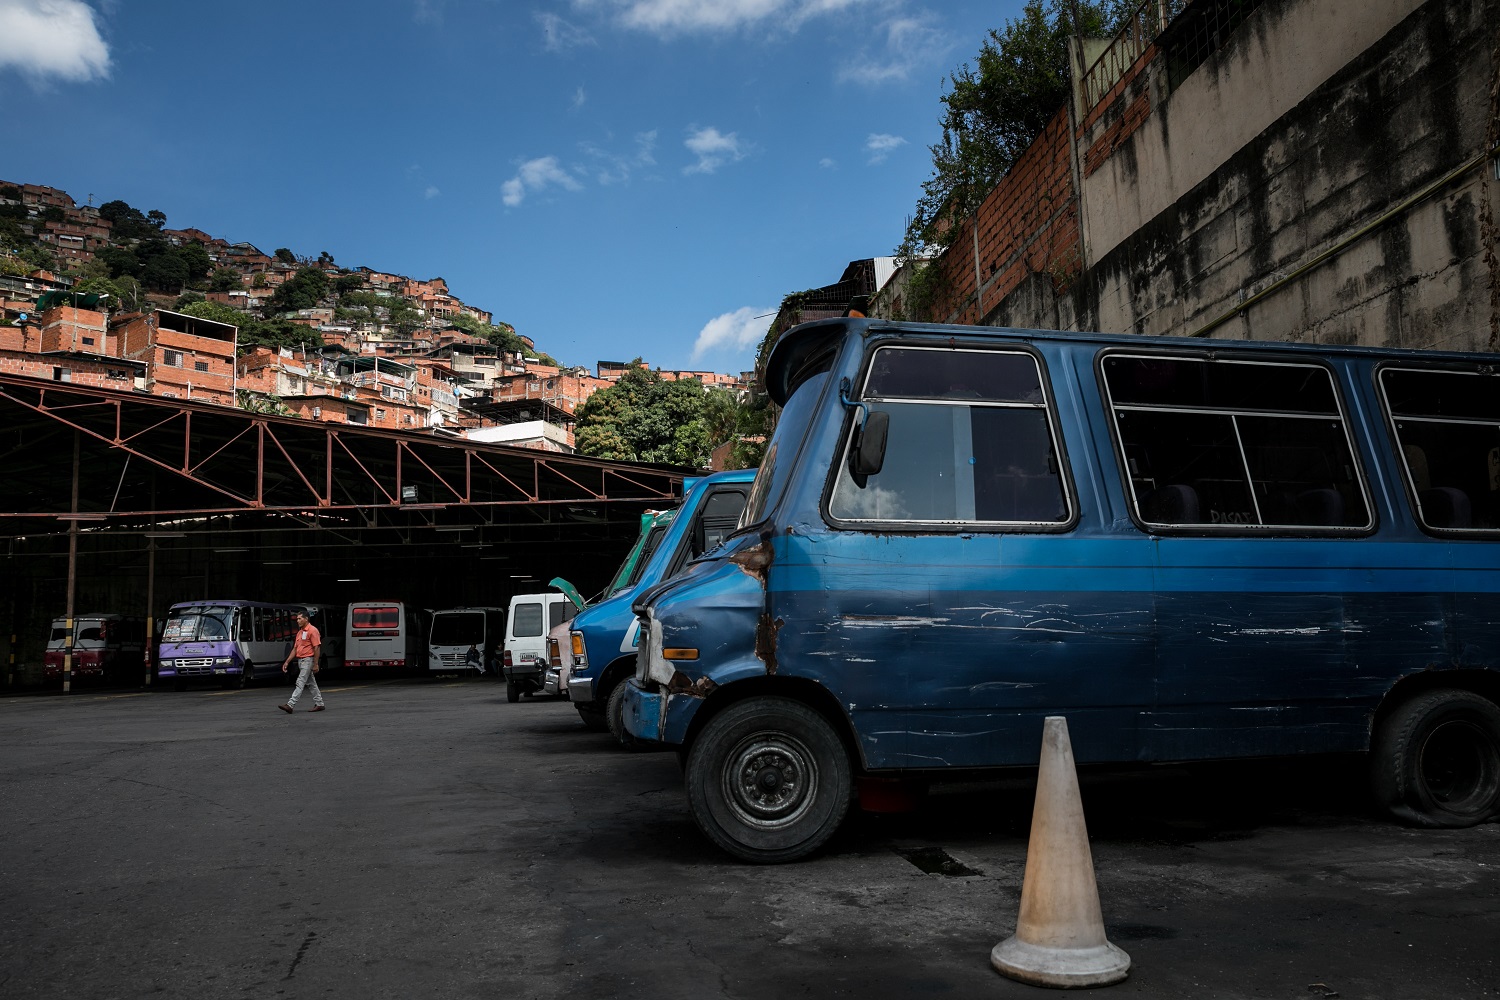 Fotografías del 10 de octubre del 2017, de búses de transporte público que no operan por falta de repuestos, en la ciudad de Caracas (Venezuela). Los altos costos de mantenimiento, la disminución de importación de repuestos, una galopante inflación y la escasez de efectivo tienen al sistema de transporte de Venezuela en jaque, mientras la población padece los efectos de esta crisis con un pasaje inestable y largos tiempos de espera para trasladarse. EFE/MIGUEL GUTIÉRREZ